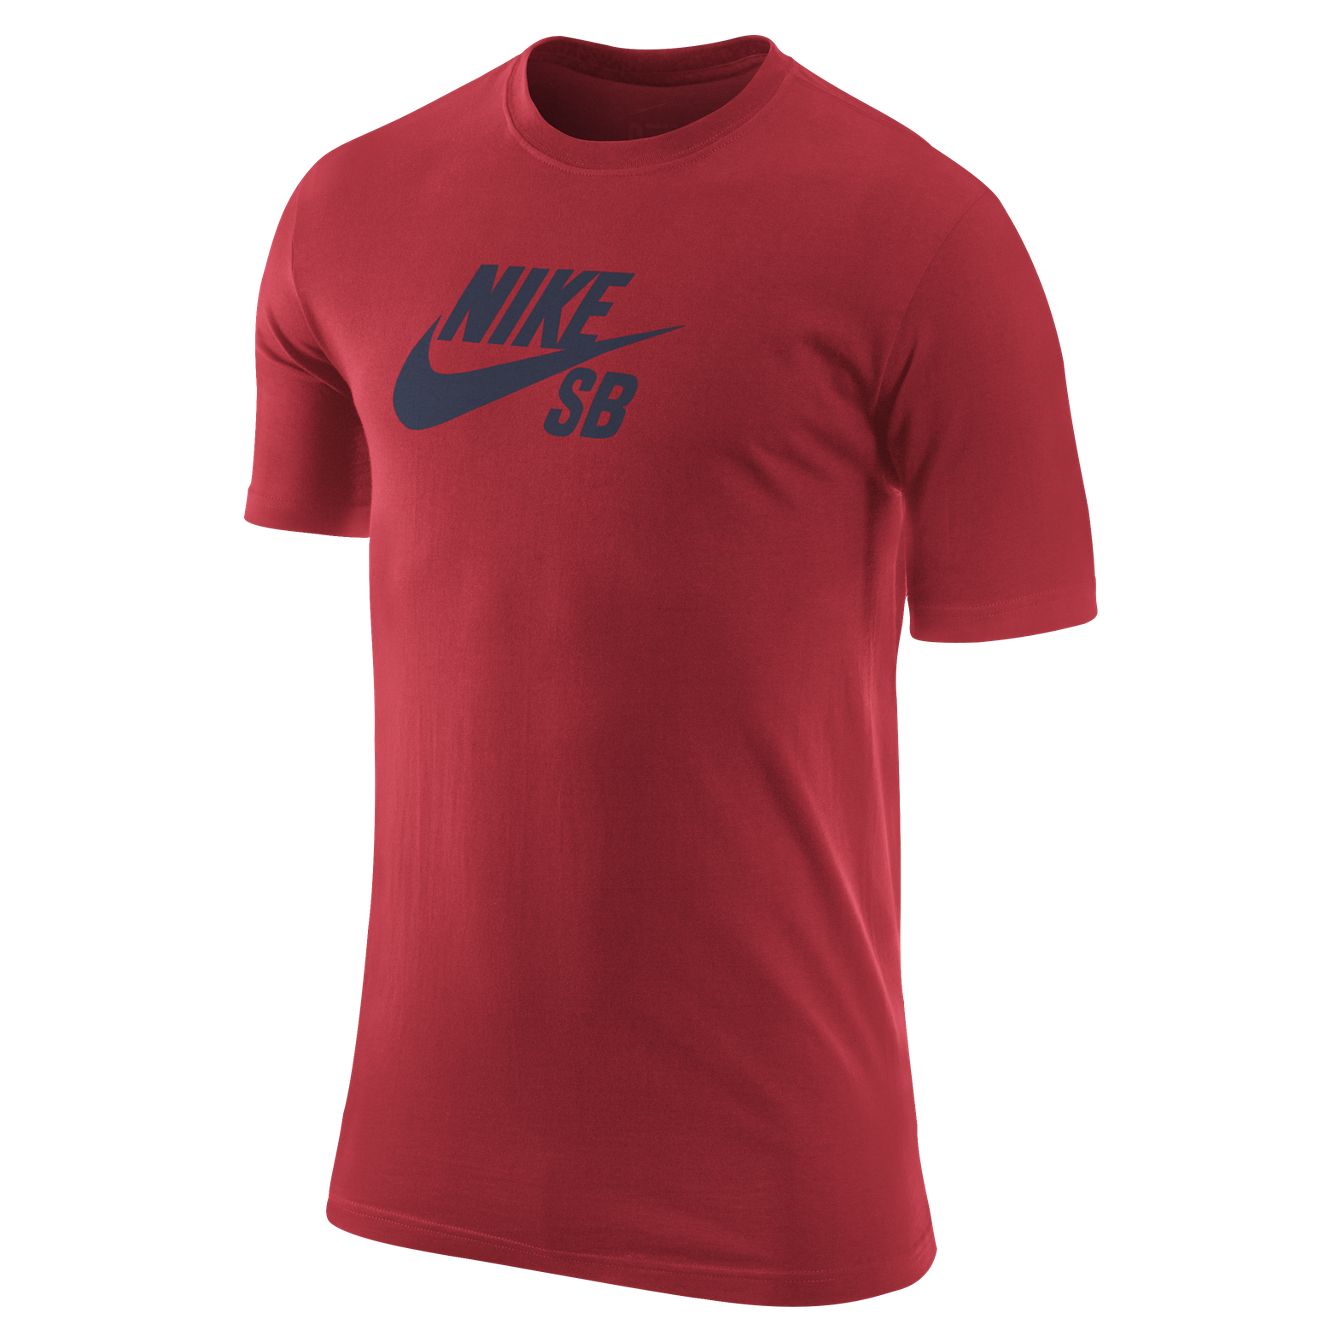 Foto Camiseta Nike SB · SB Icon Tee · Pimento/Mid night Navy foto 556617